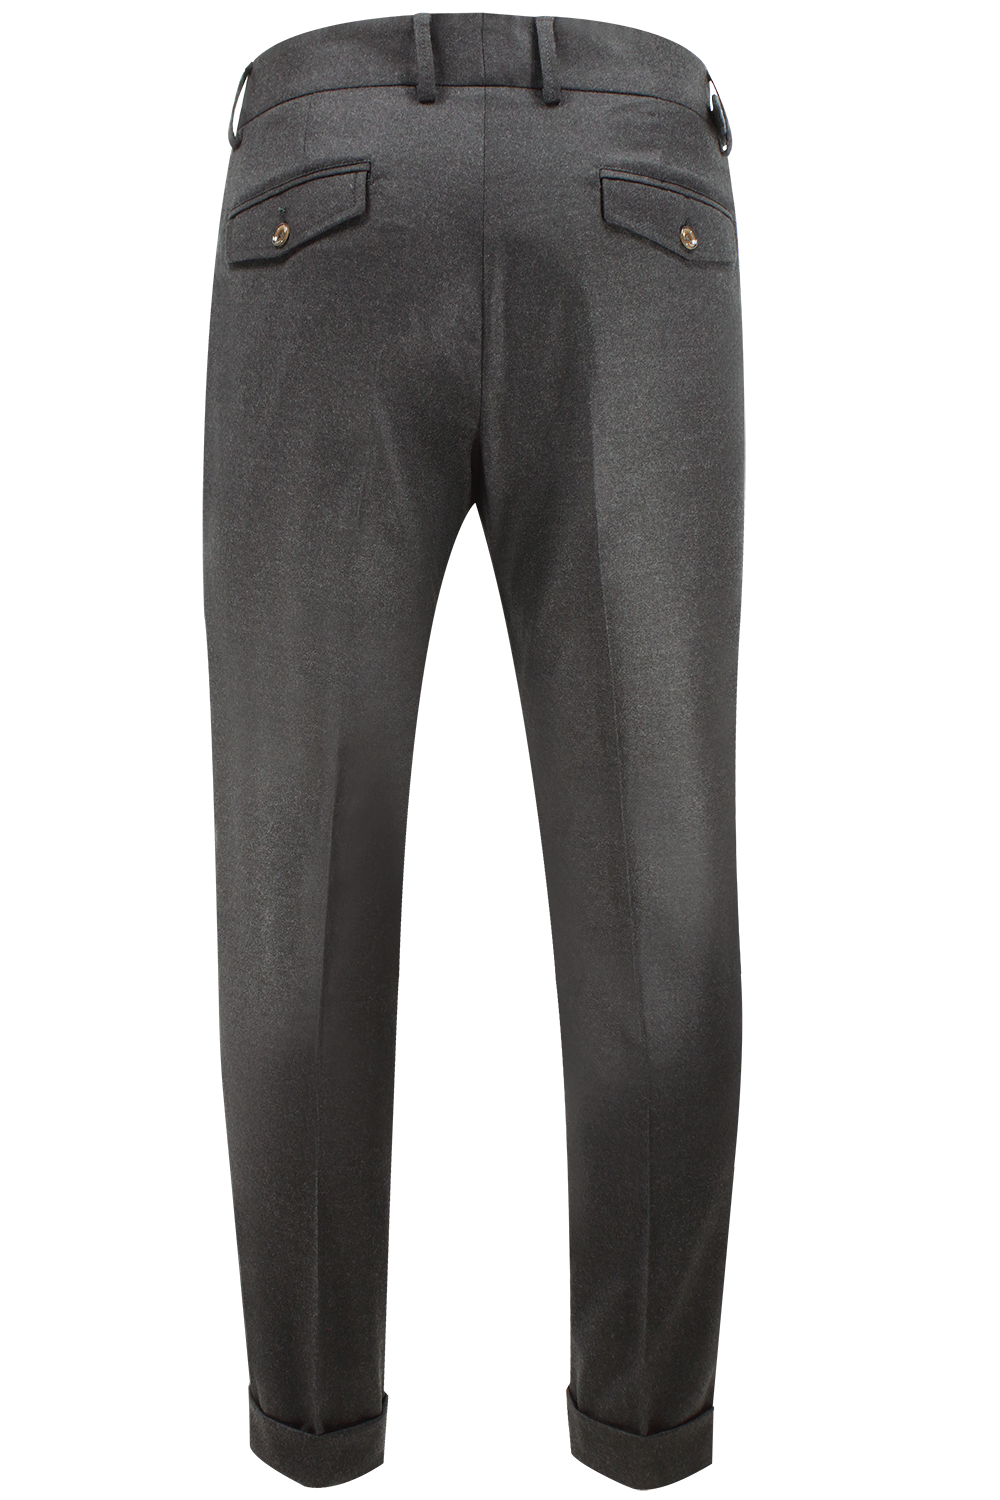 Pantalone con due pinces in lana grigio fumo retro